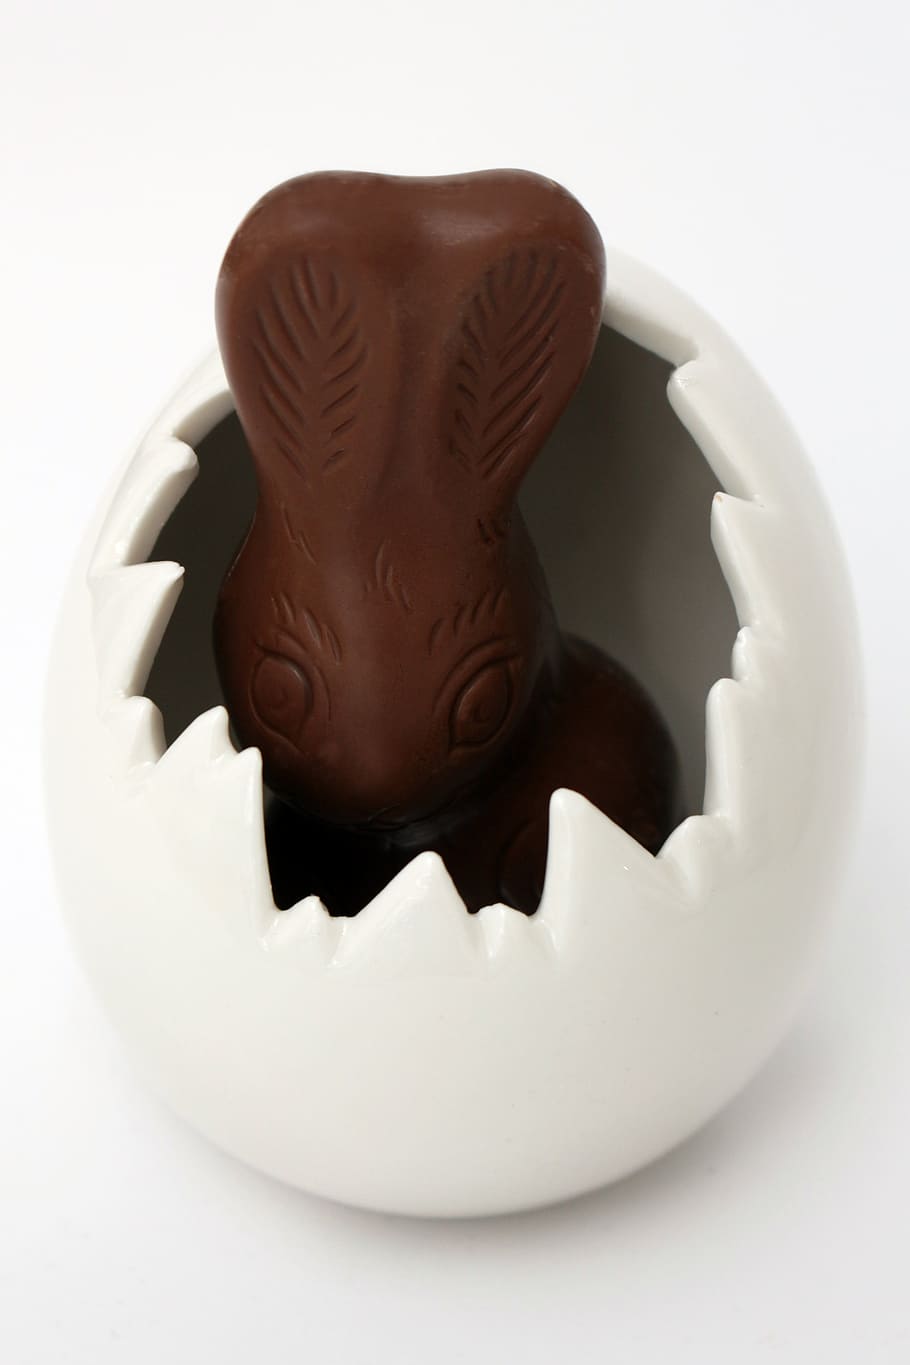 páscoa, coelhinho da páscoa, ovo, ovo de páscoa, chocolate, coelho de chocolate, lebre, tema da páscoa, decoração de páscoa, orelhas